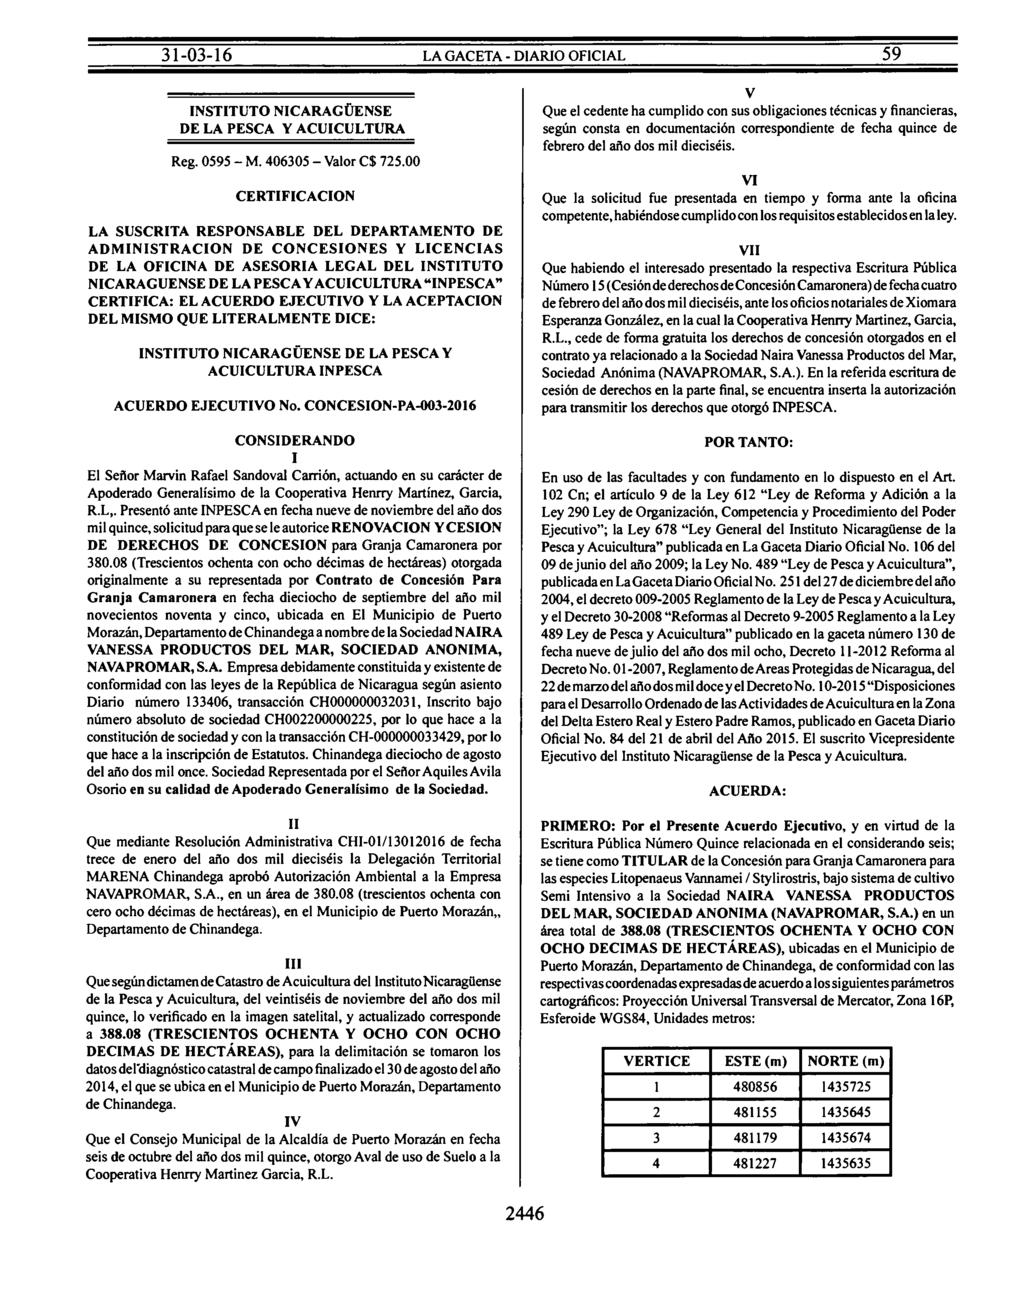 INSTITUTO NICARAGÜENSE DE LA PESCA Y ACUICULTURA Reg. 0595 -M. 406305- Valor C$ 725.